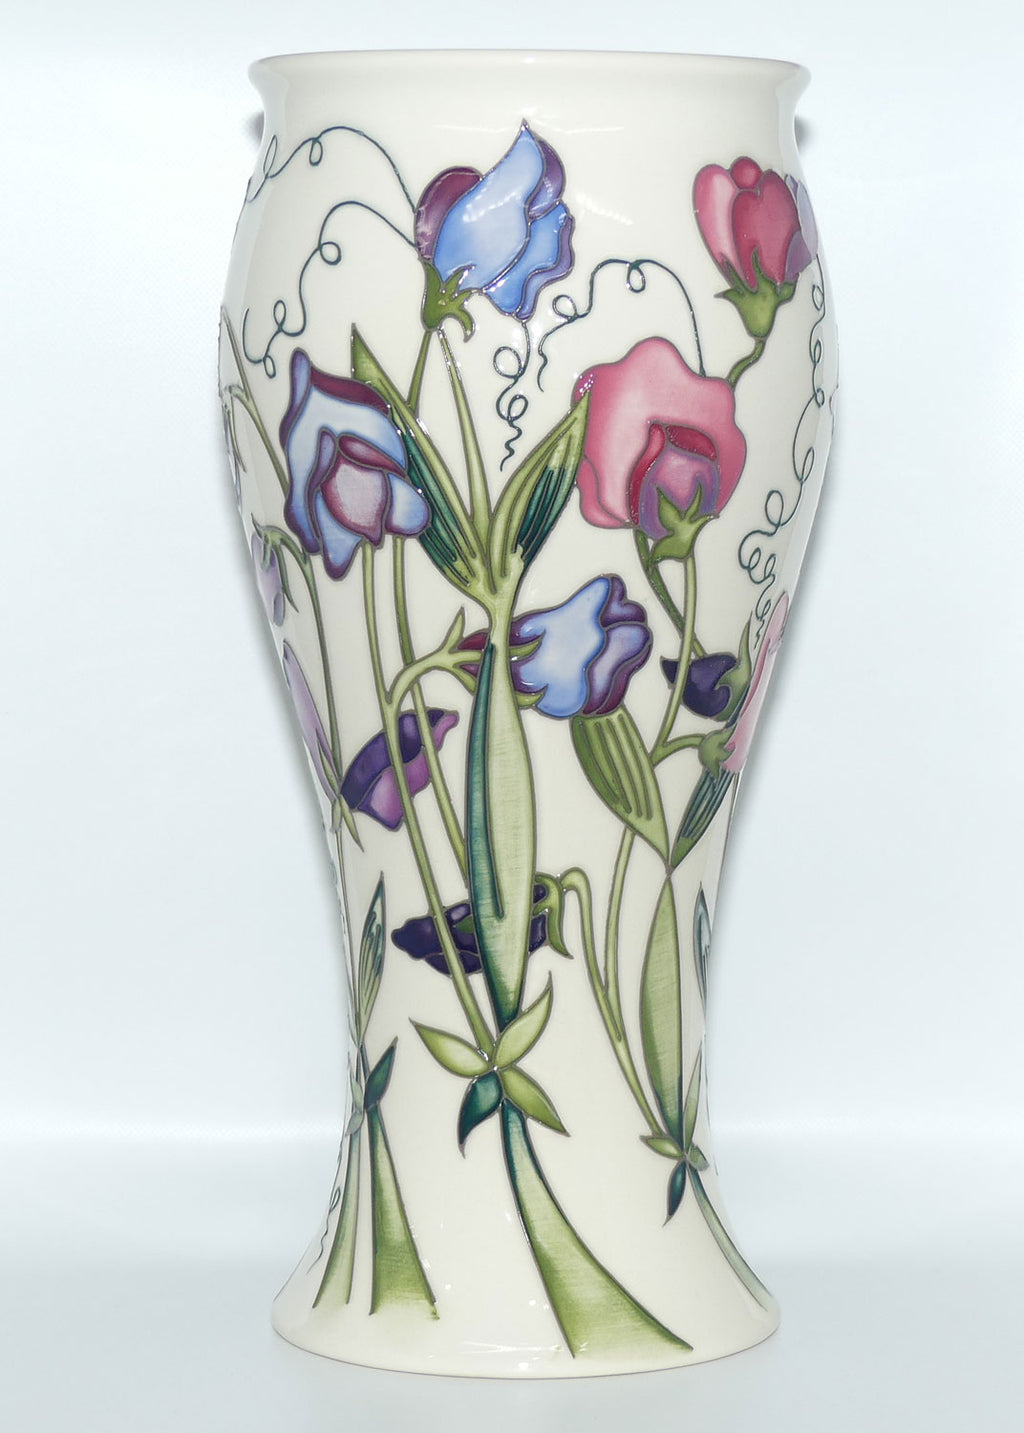 Moorcroft Pottery | Sweetness 6/12 vase | Nicola Slaney